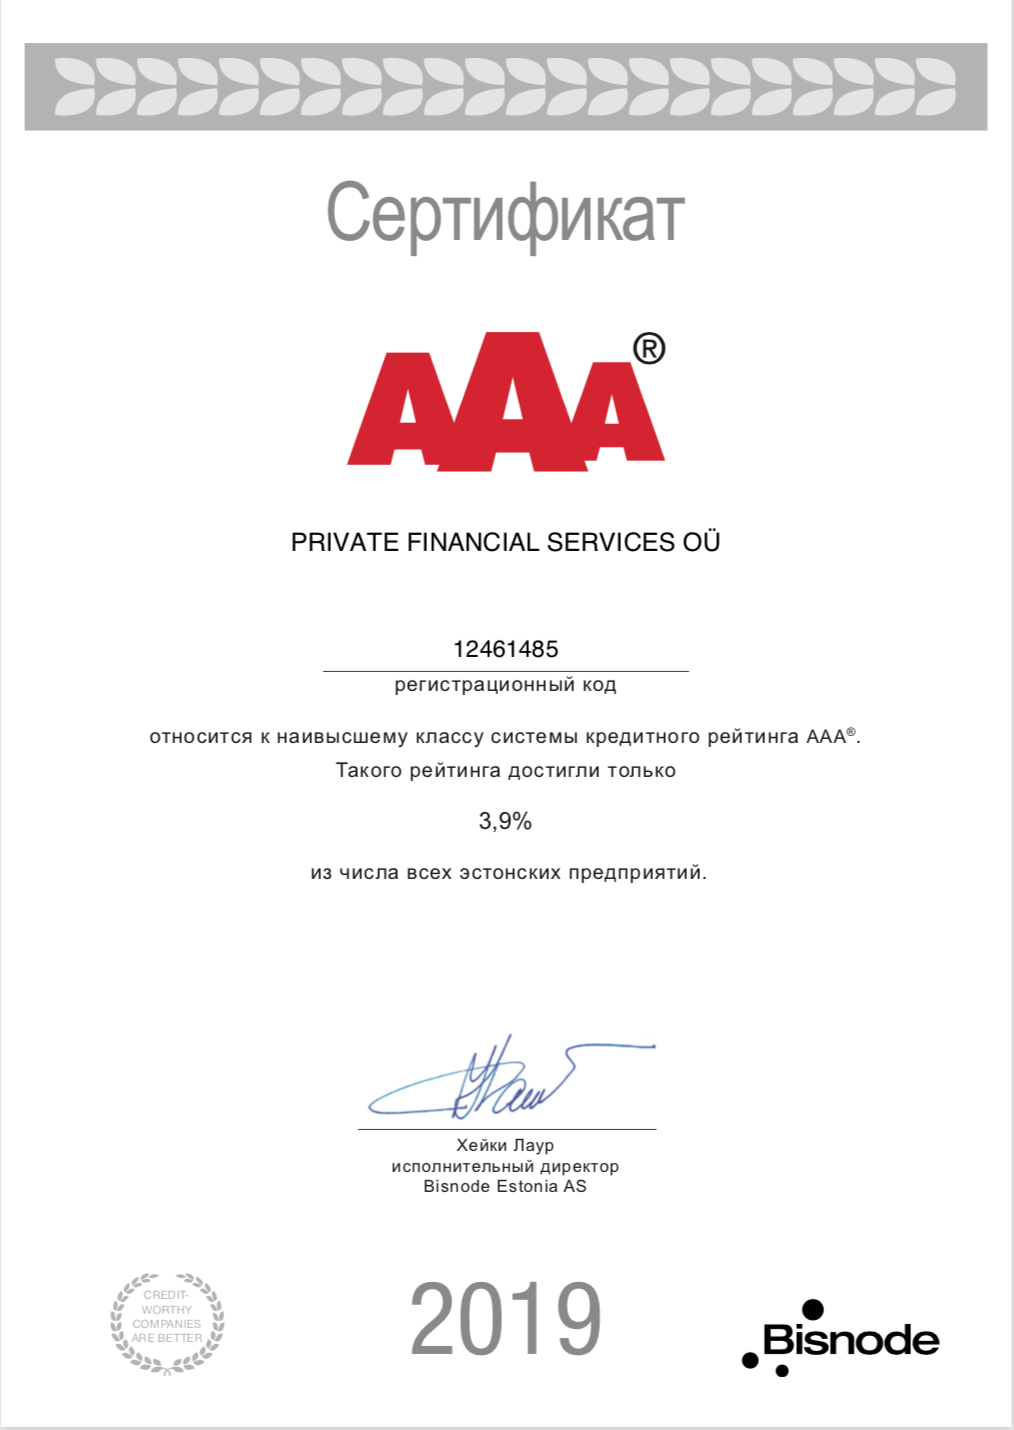 Эстонский филиал получил кредитный рейтинг ААА